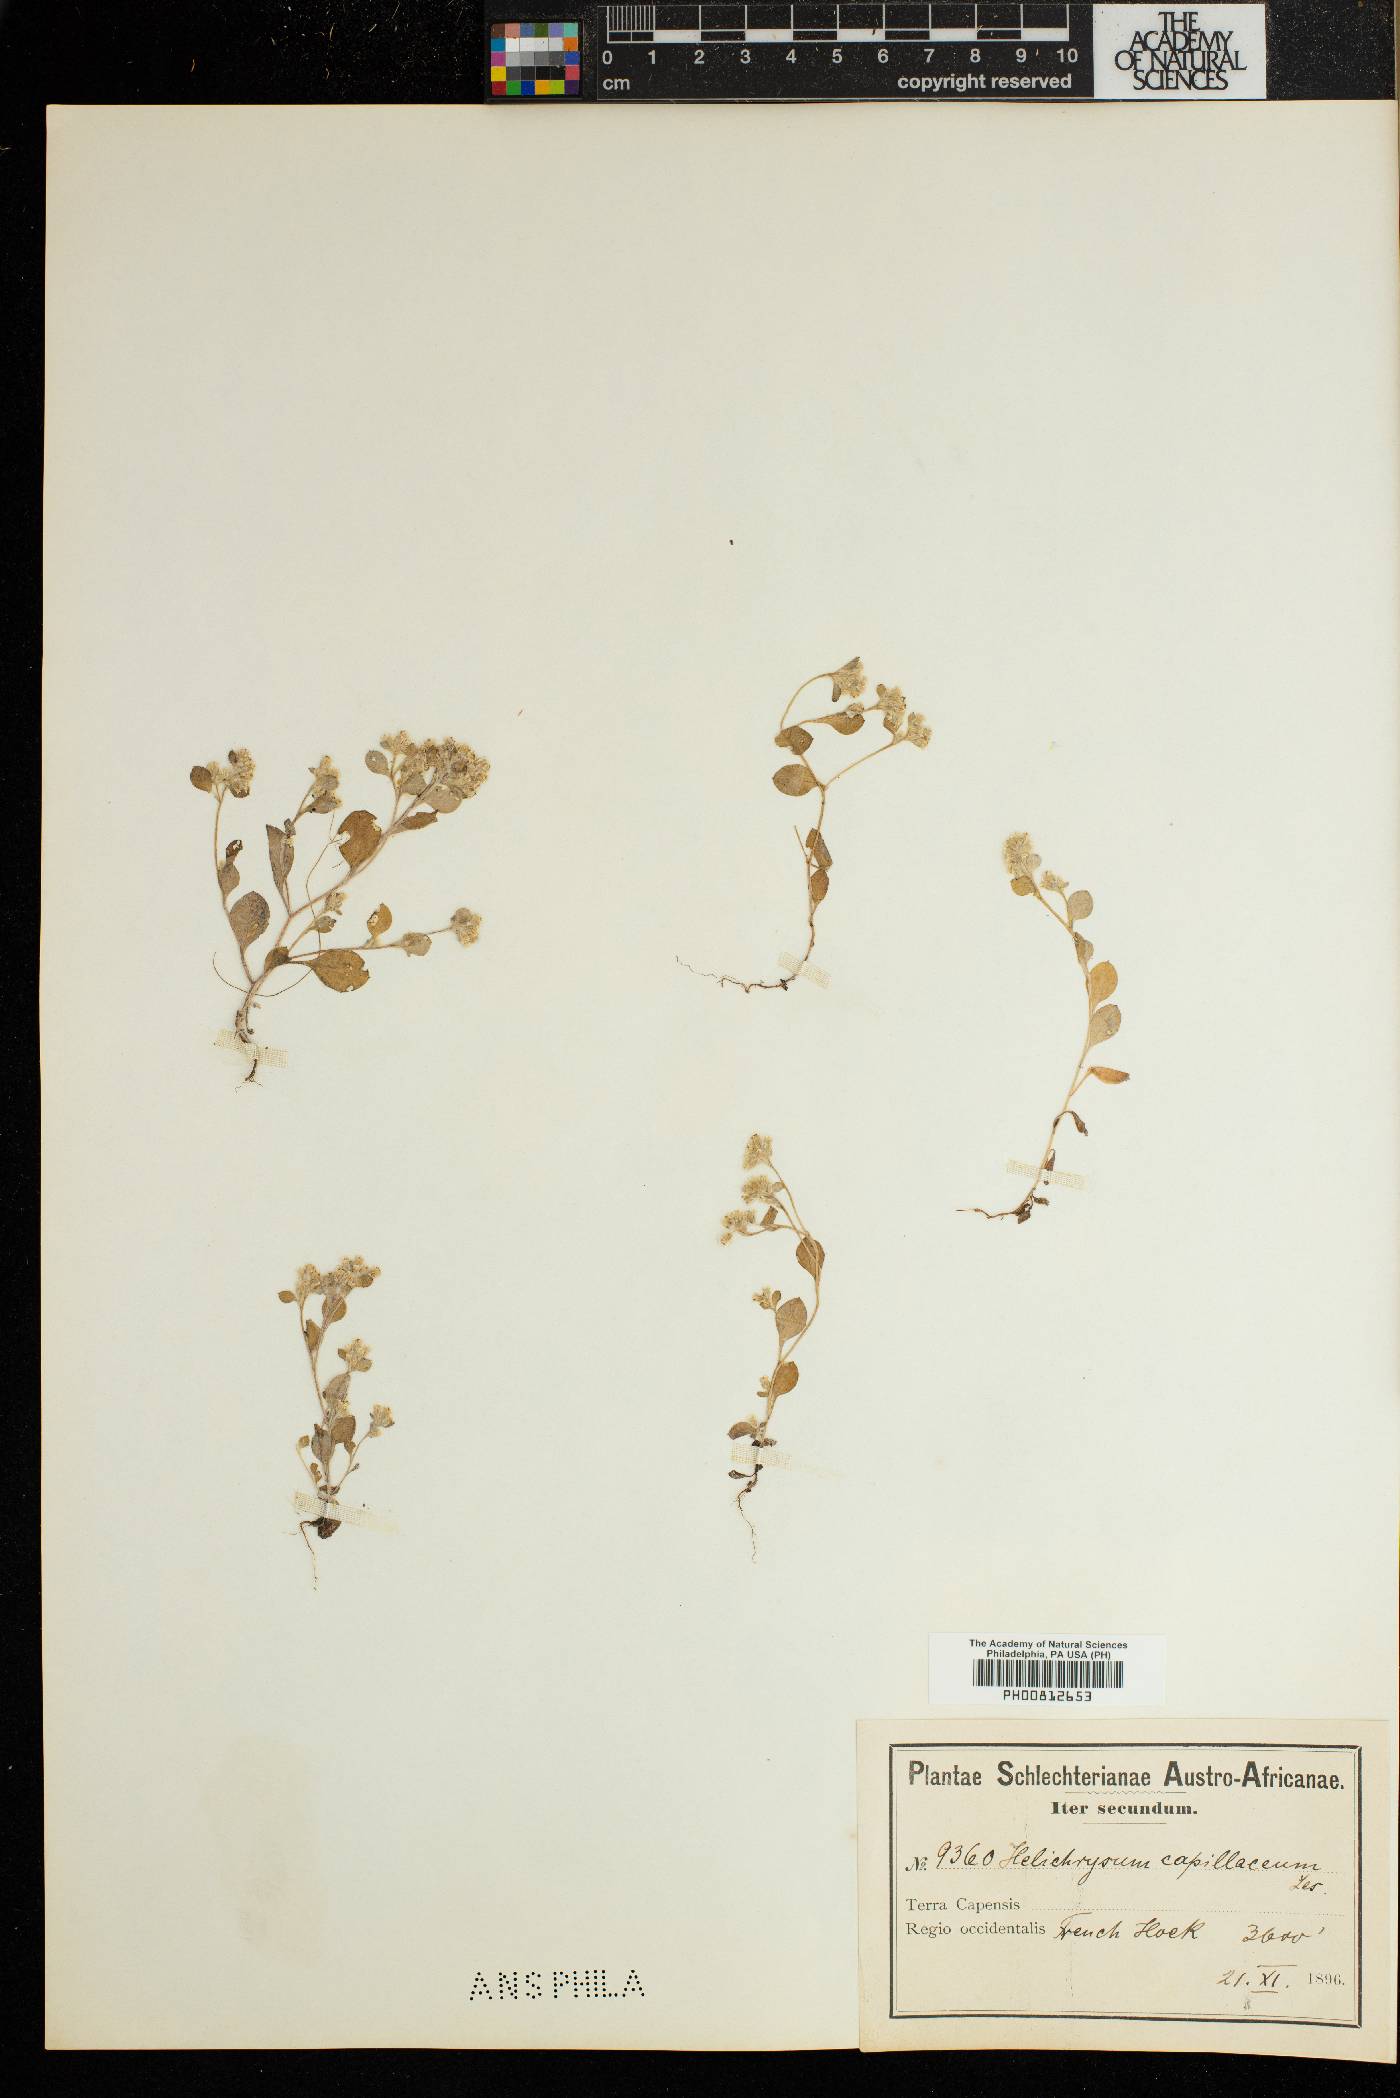 Troglophyton capillaceum subsp. capillaceum image